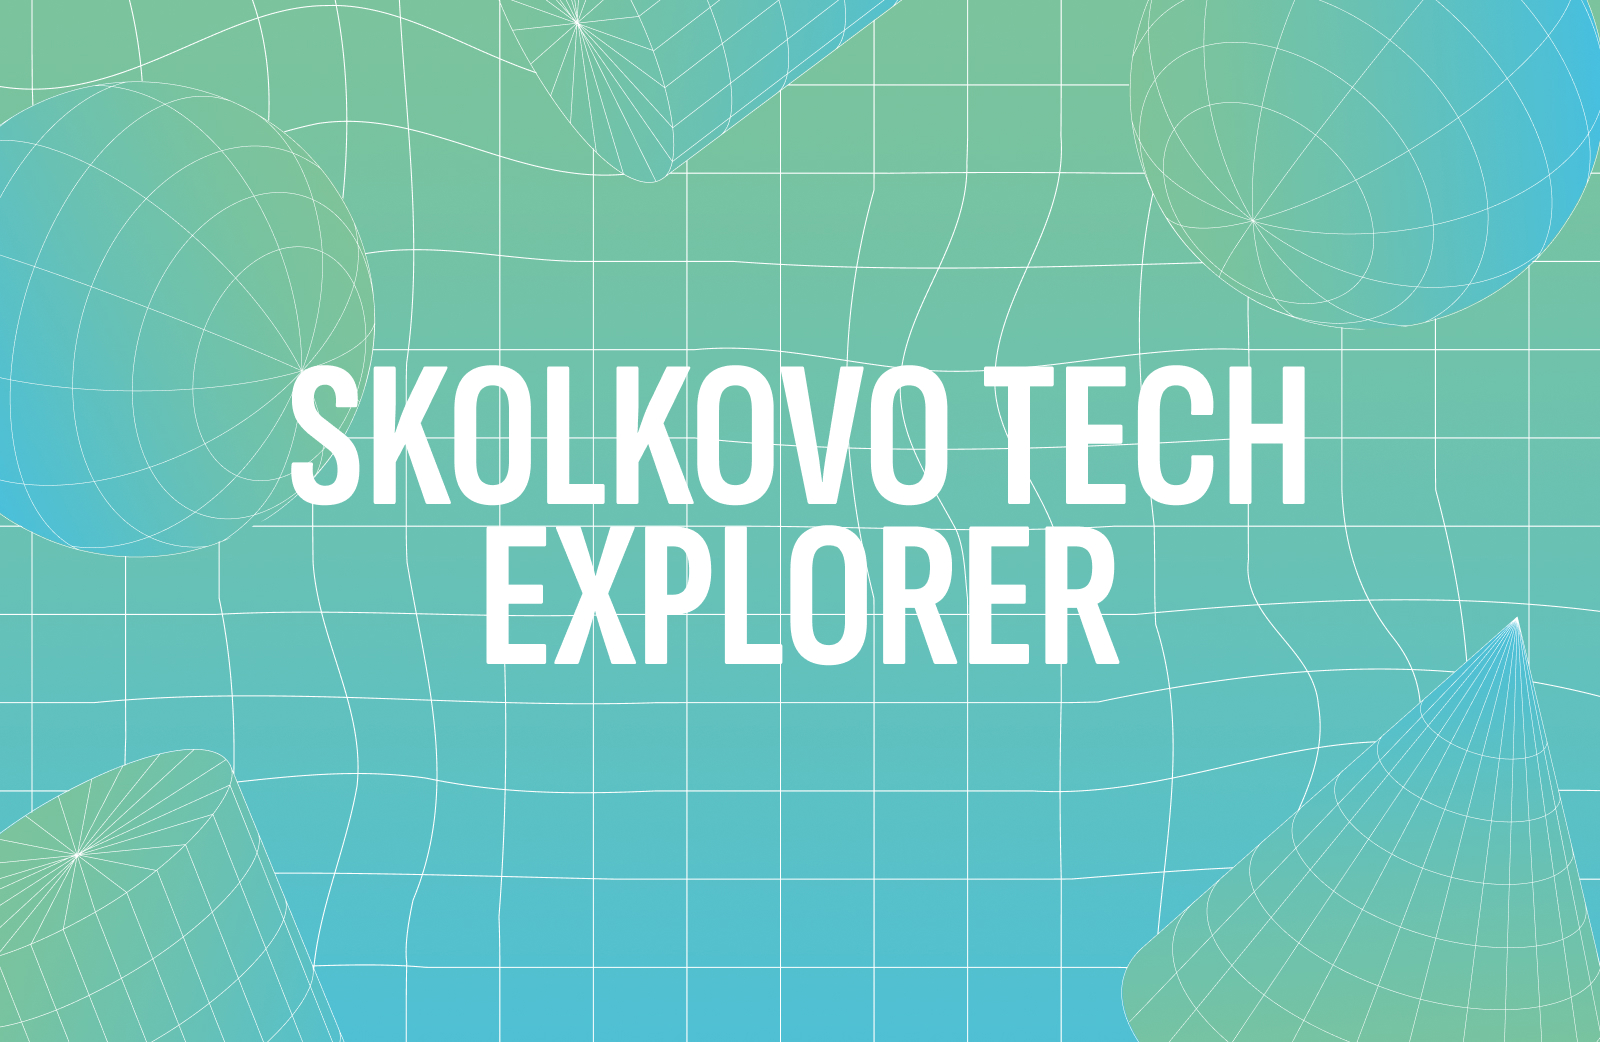 Skolkovo Tech Explorer